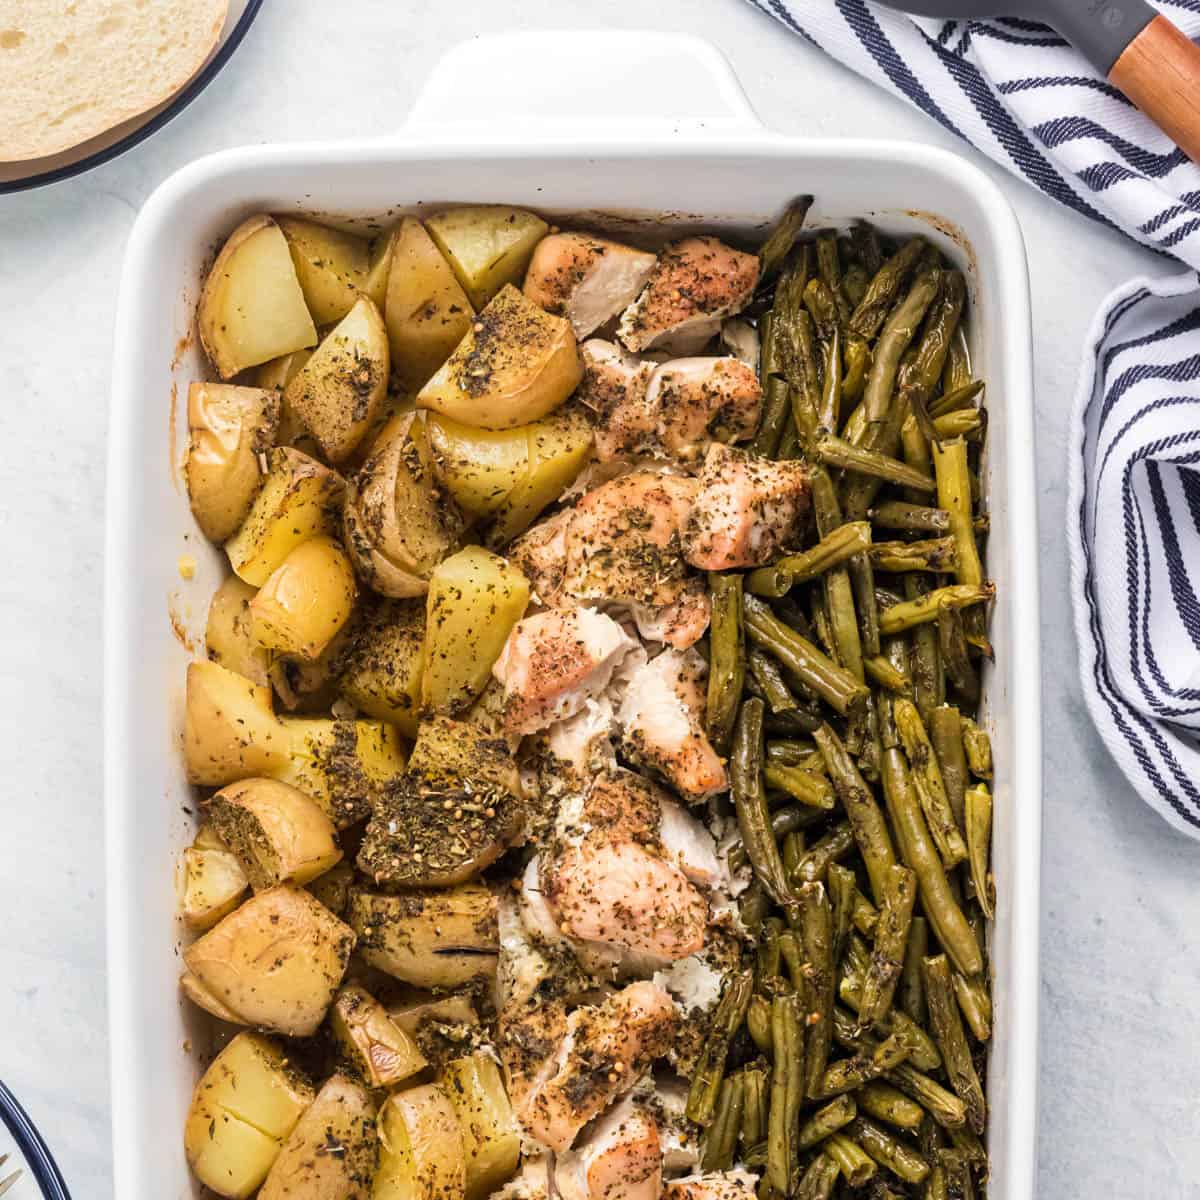 https://houseofnasheats.com/wp-content/uploads/2022/01/One-Pan-Chicken-Potato-Green-Bean-Dinner-Recipe-1.jpg